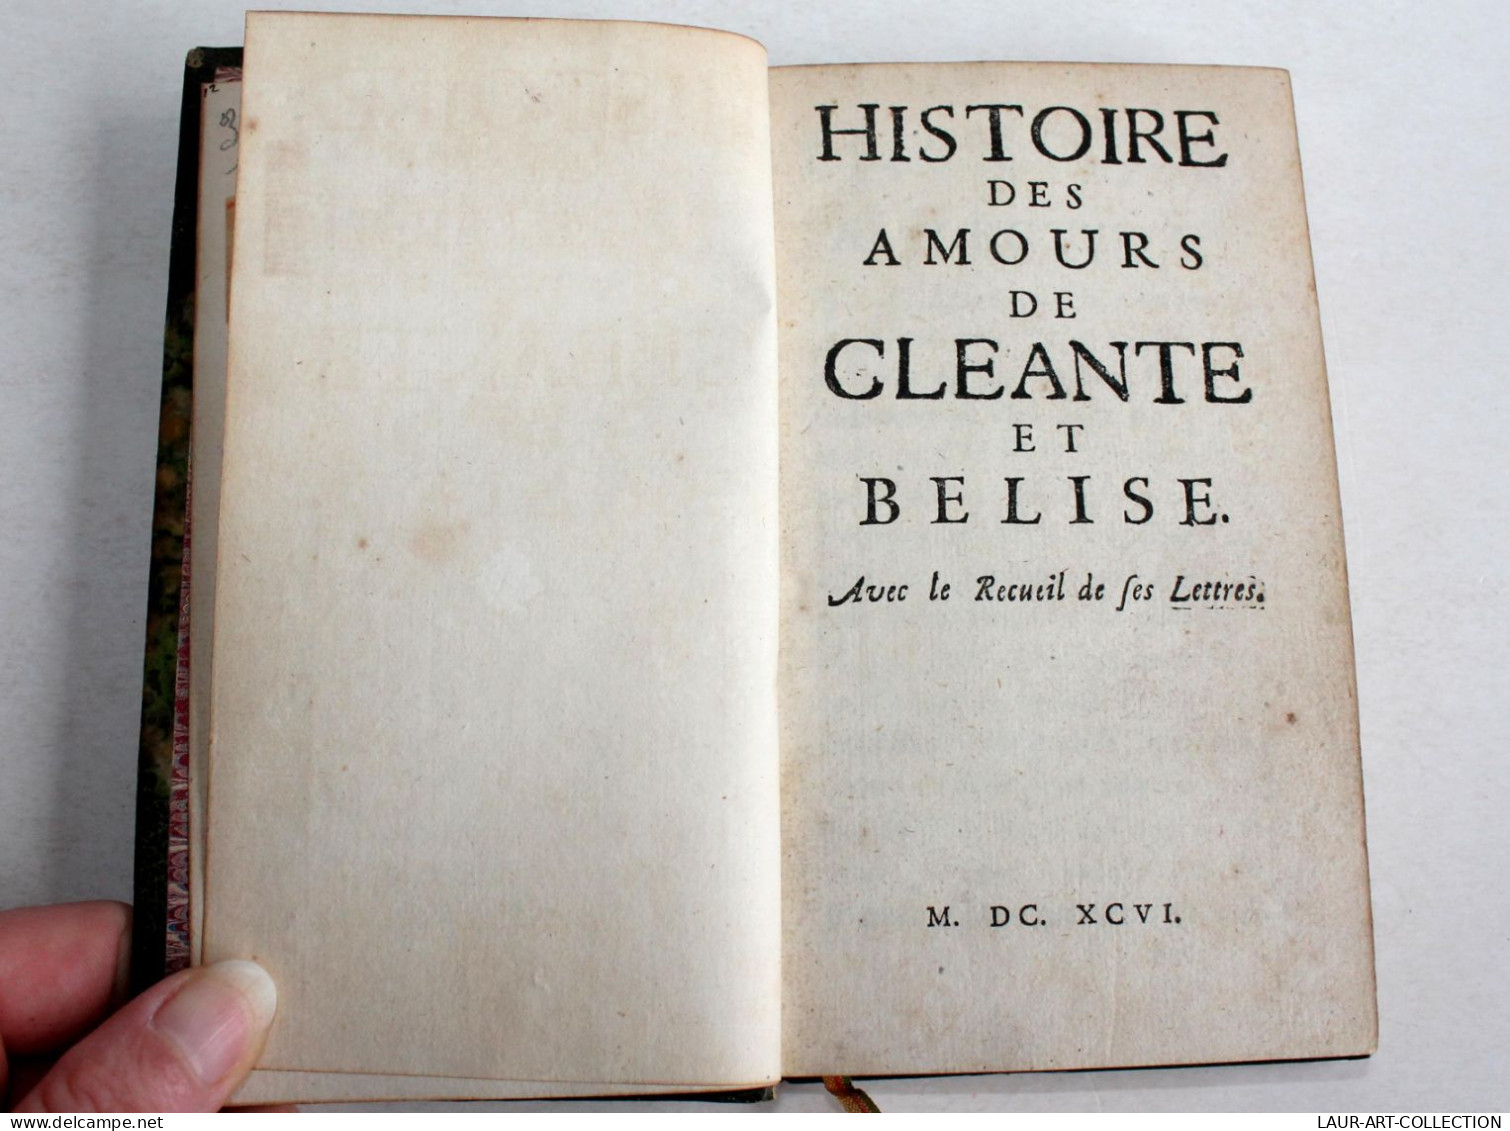 INTROUVABLE! HISTOIRE DES AMOURS DE CLEANTE Et BELISE + RECUEIL DES LETTRES 1696 / ANCIEN LIVRE XVIIe SIECLE (2603.33) - Ante 18imo Secolo